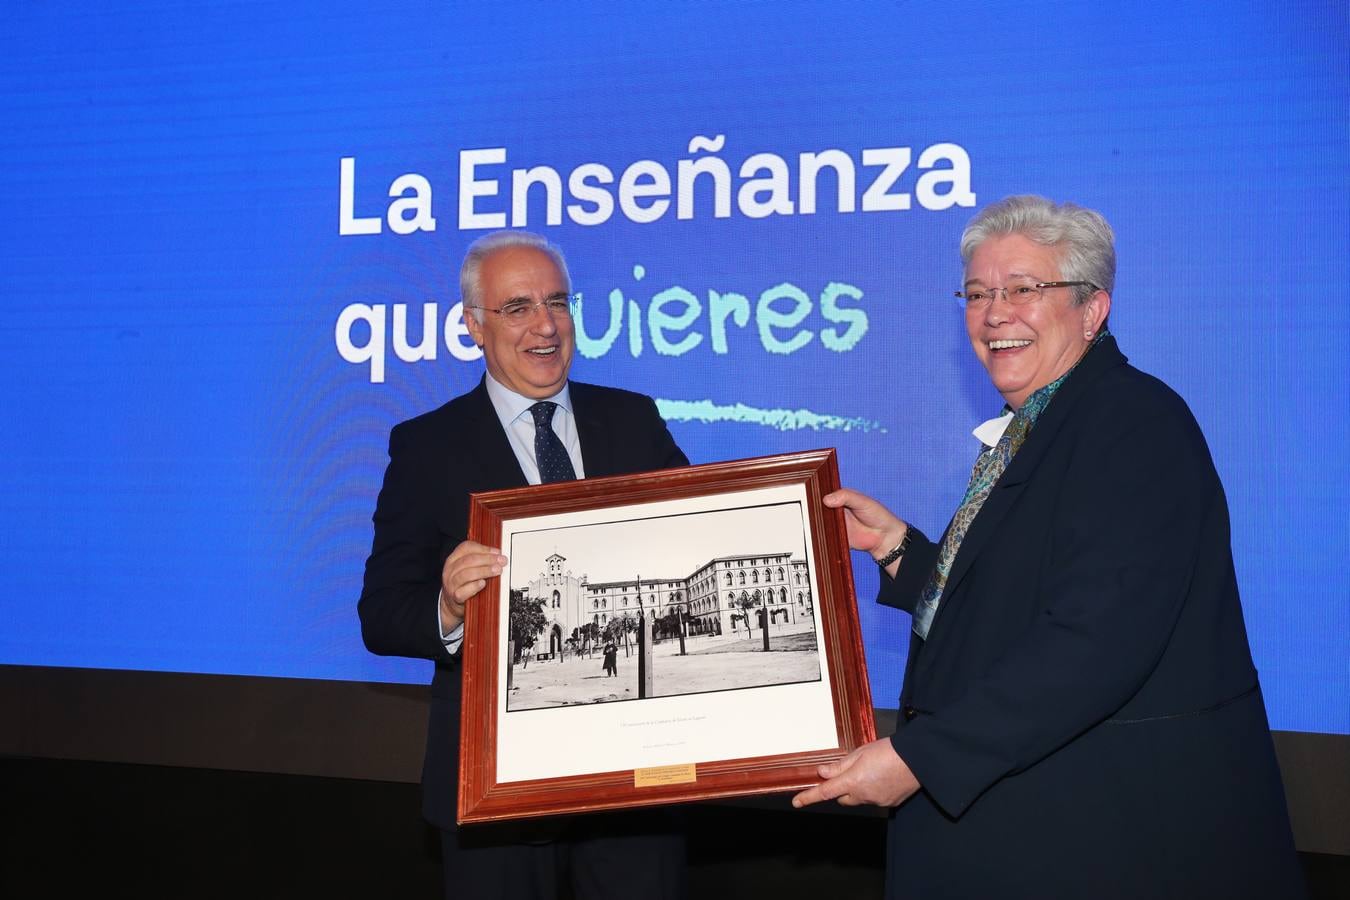 Fotos: La Enseñanza celebra su 130 aniversario